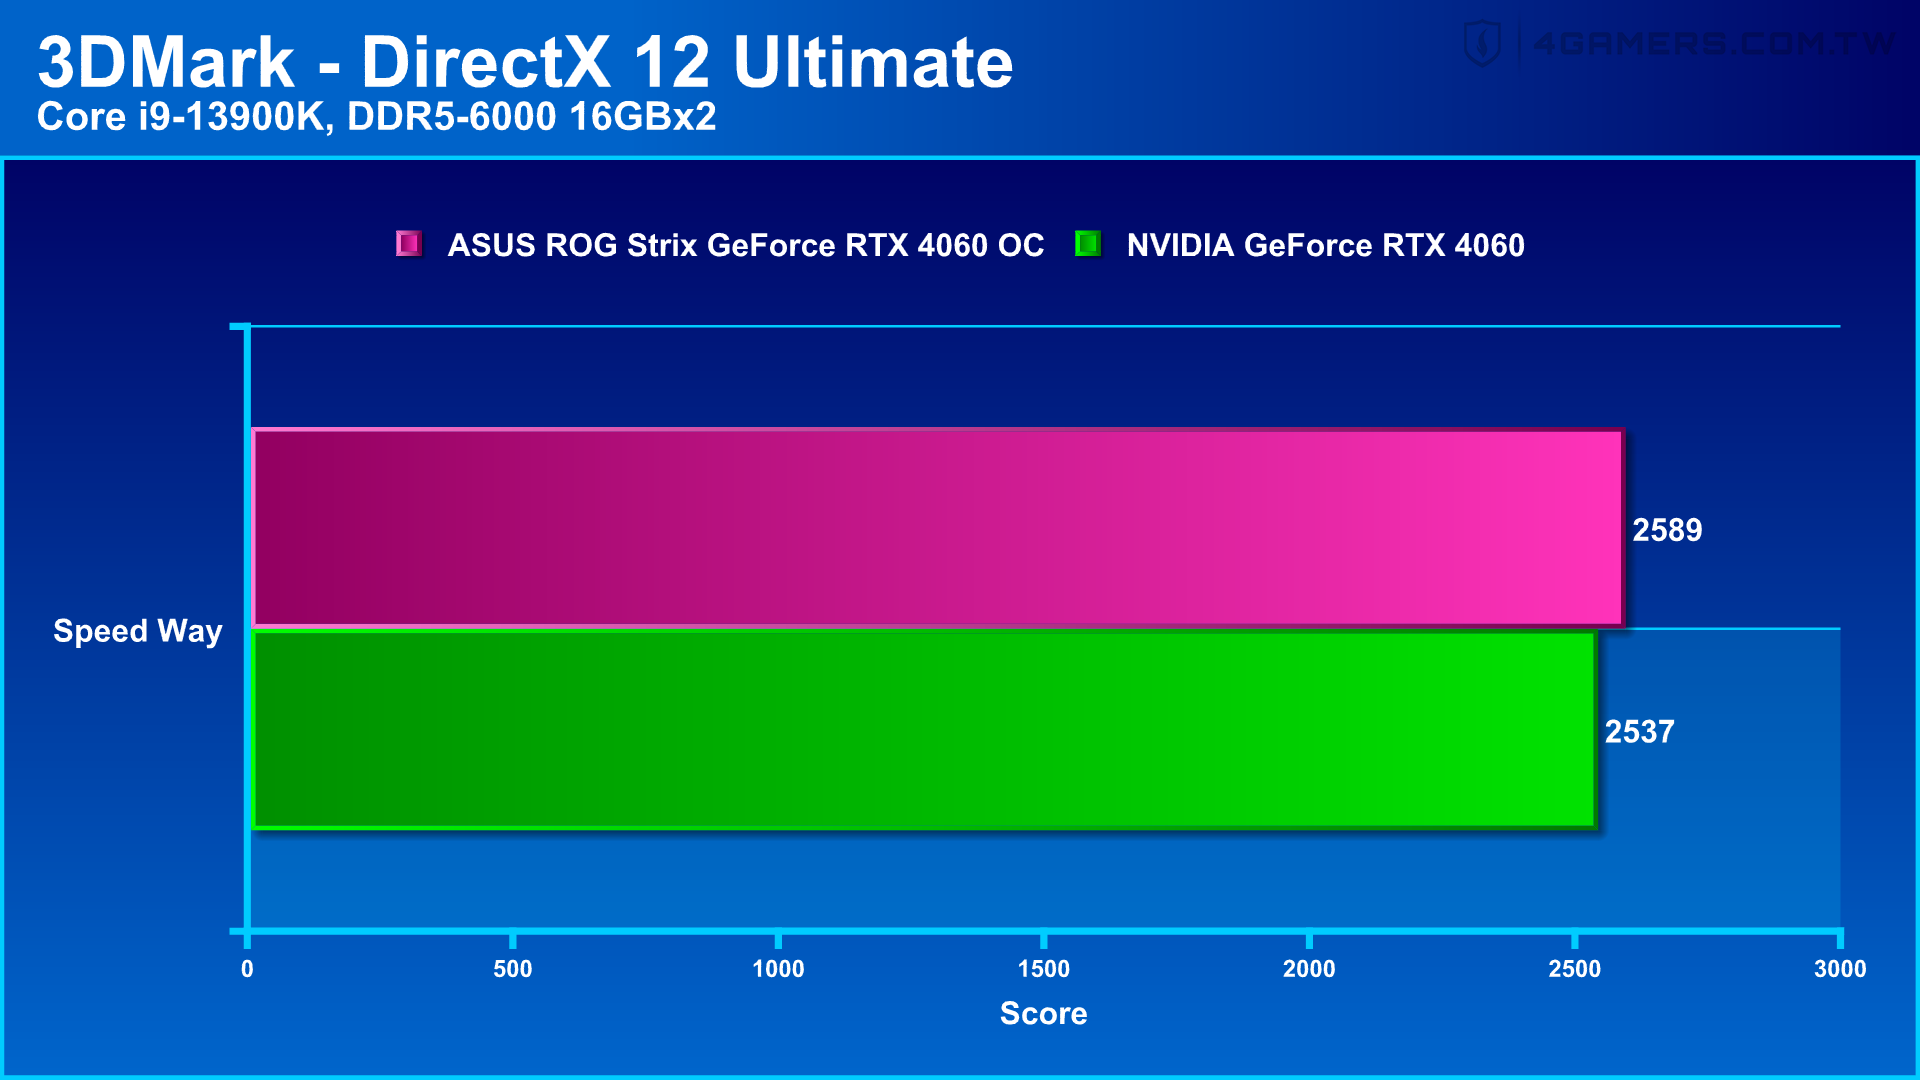 ASUS ROG Strix GeForce RTX 4060